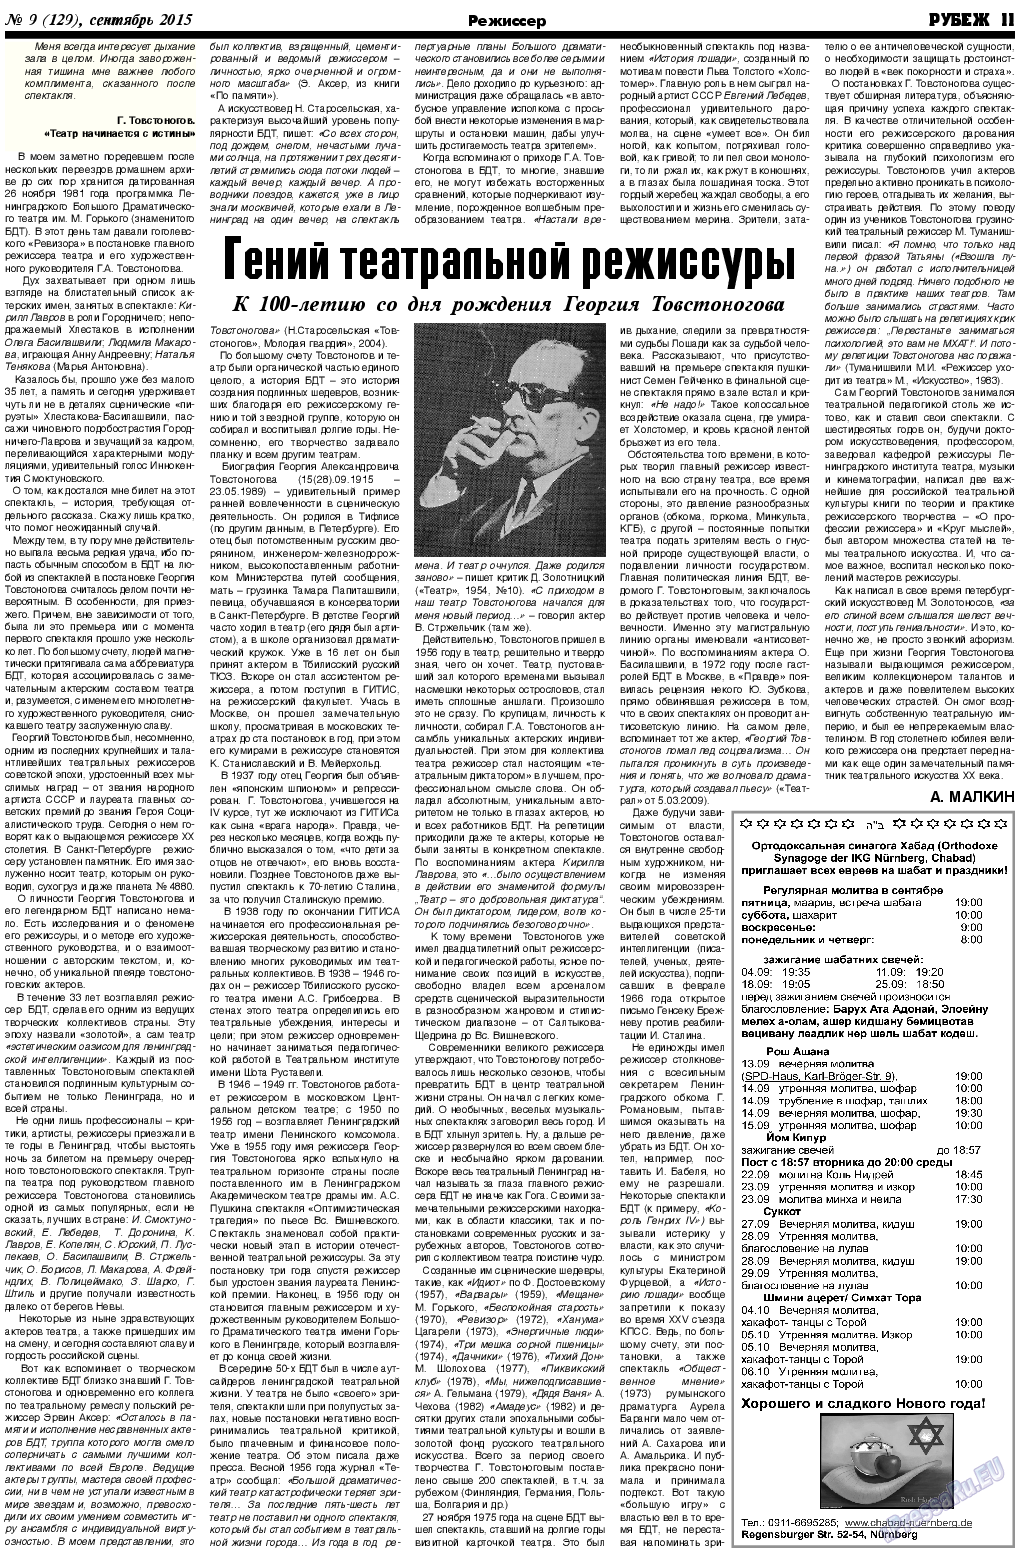 Рубеж (газета). 2015 год, номер 9, стр. 11